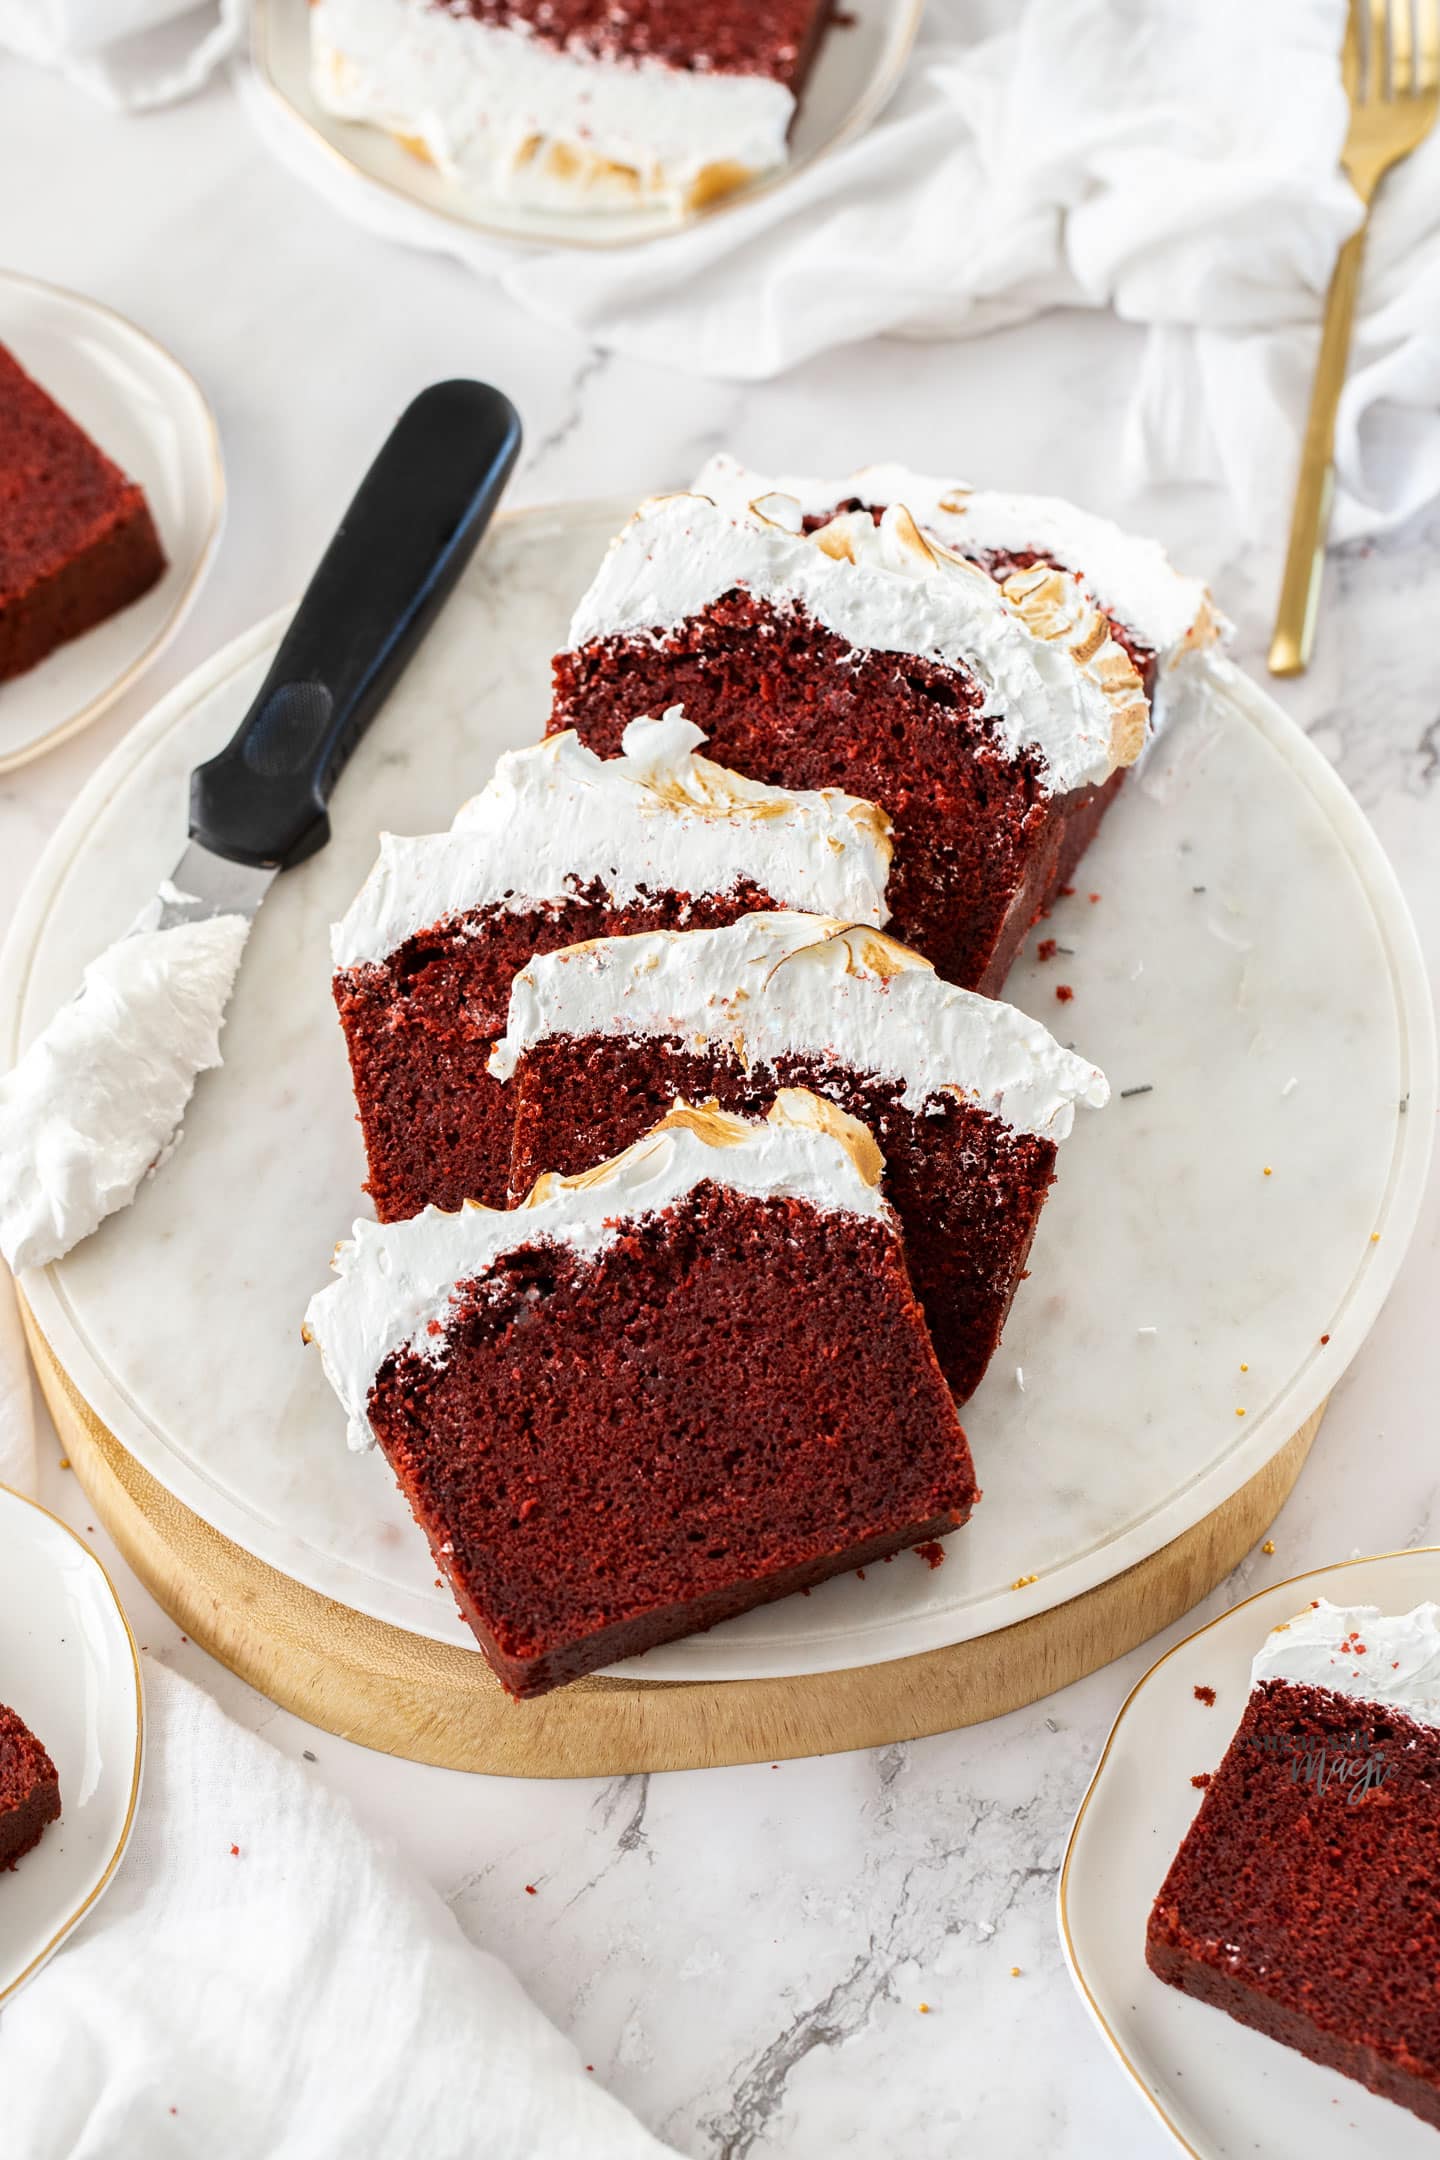 Slices of red velvet pound cake on a white platter